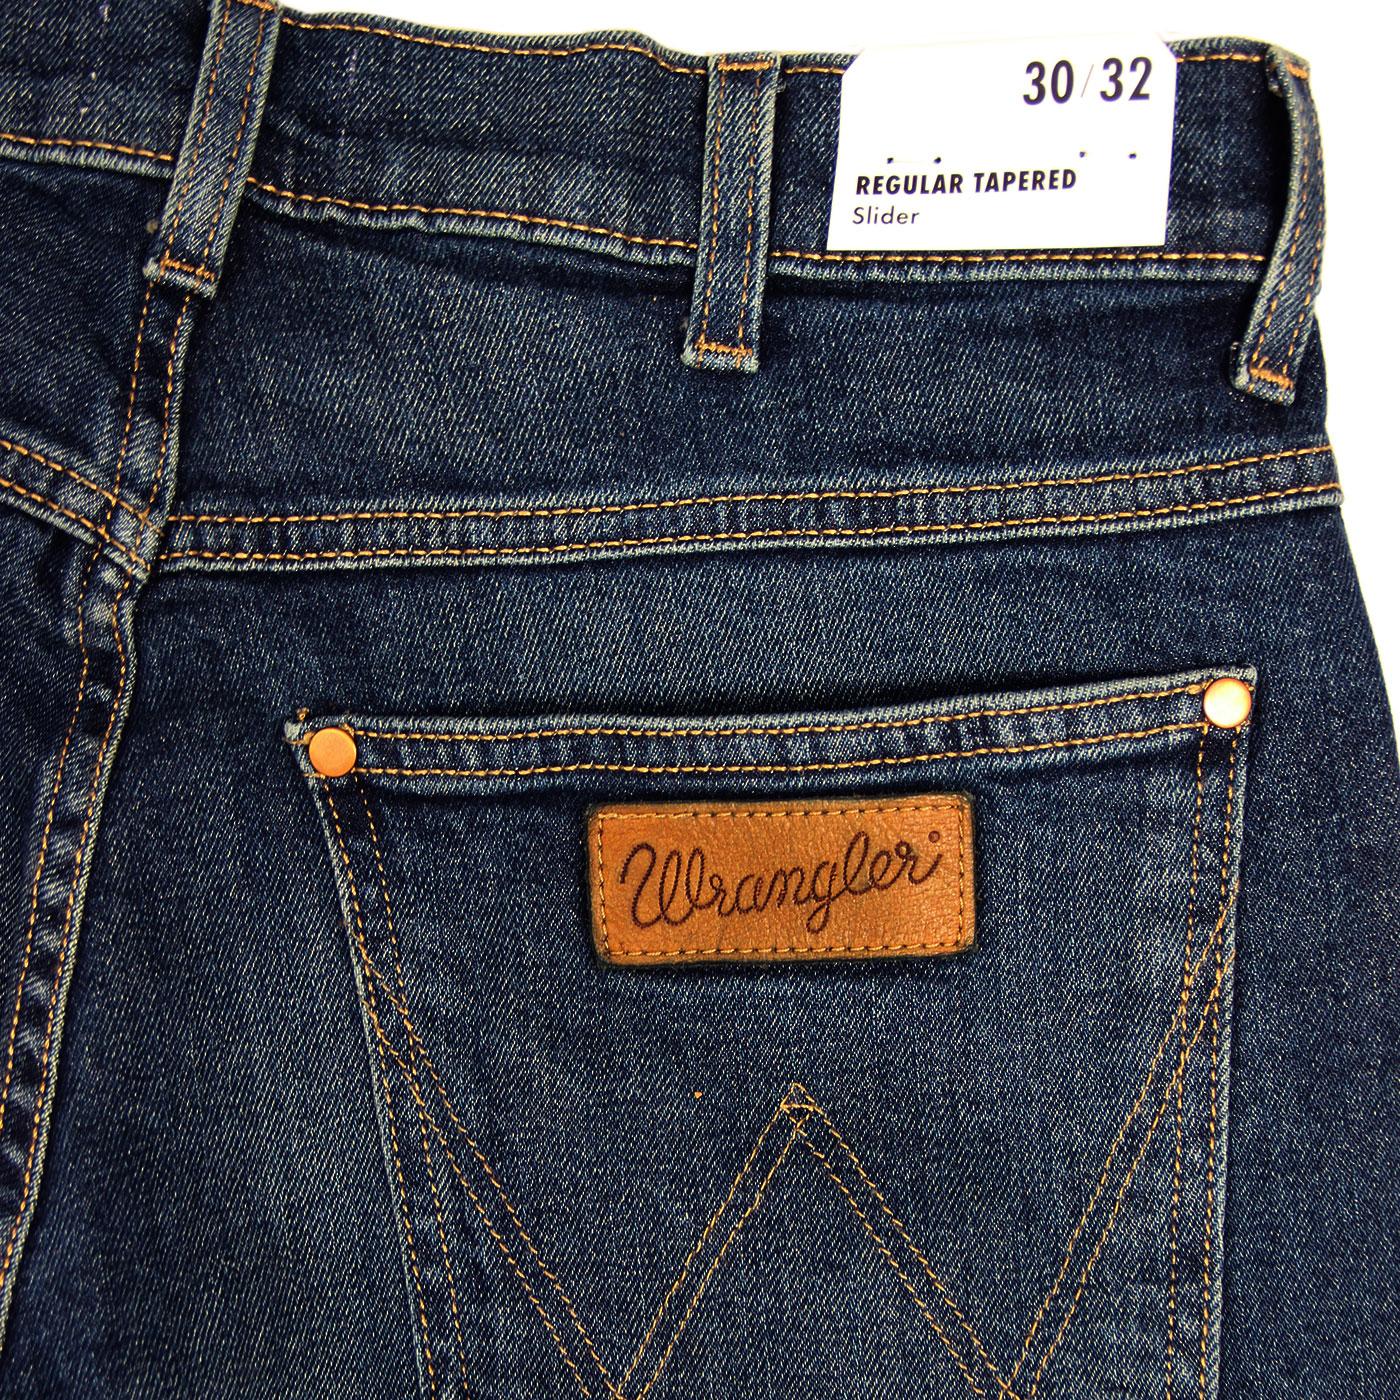 WRANGLER Slider Regular Tapered Denim Jeans in Indigo Wit